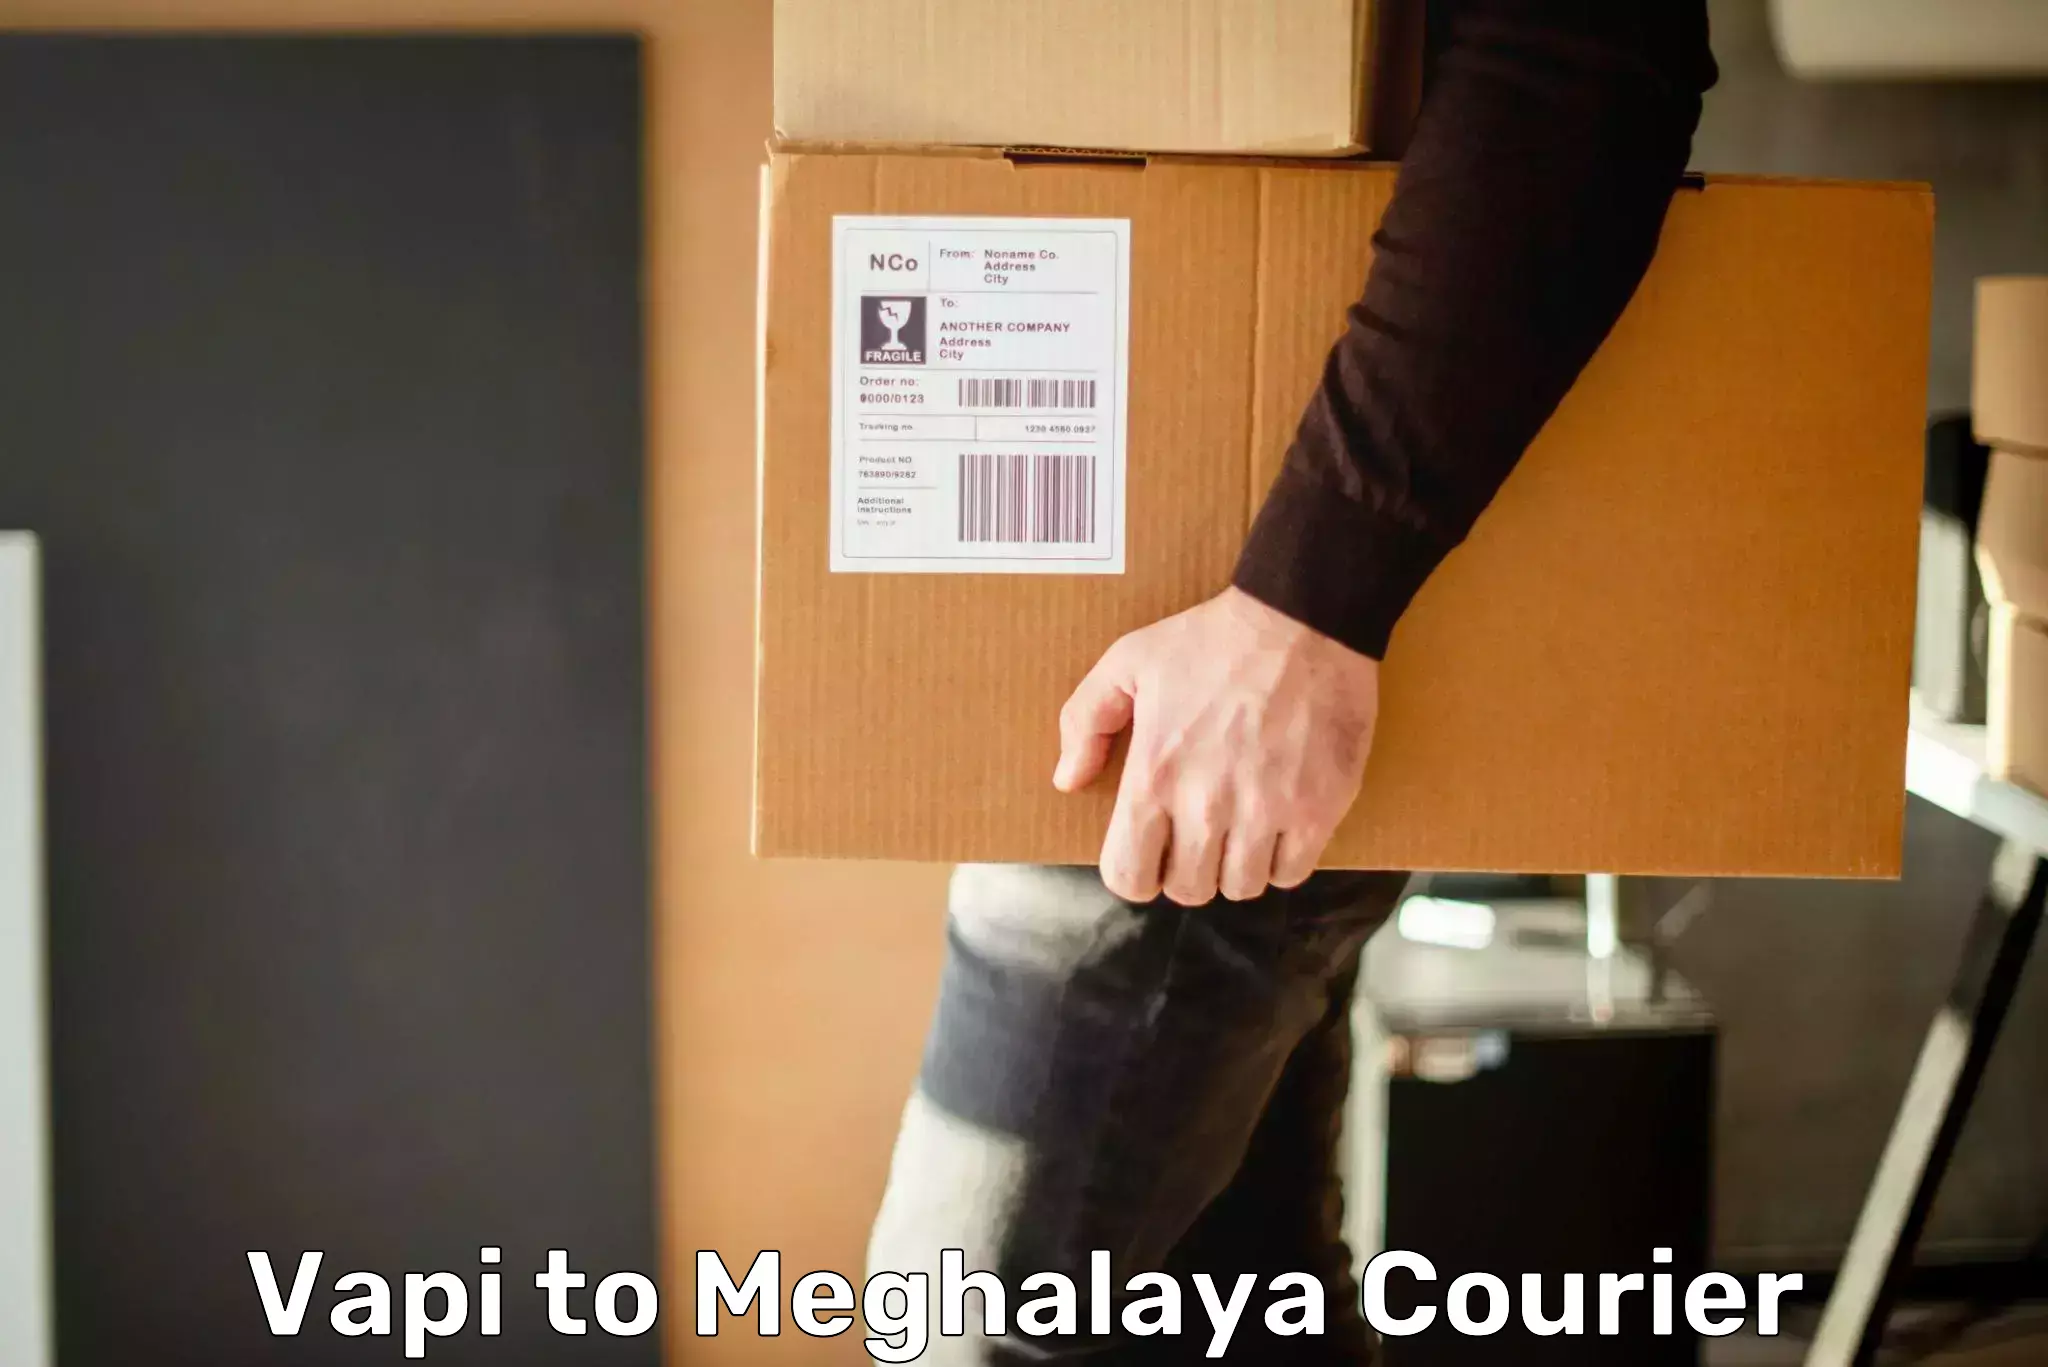 Courier service innovation Vapi to Meghalaya